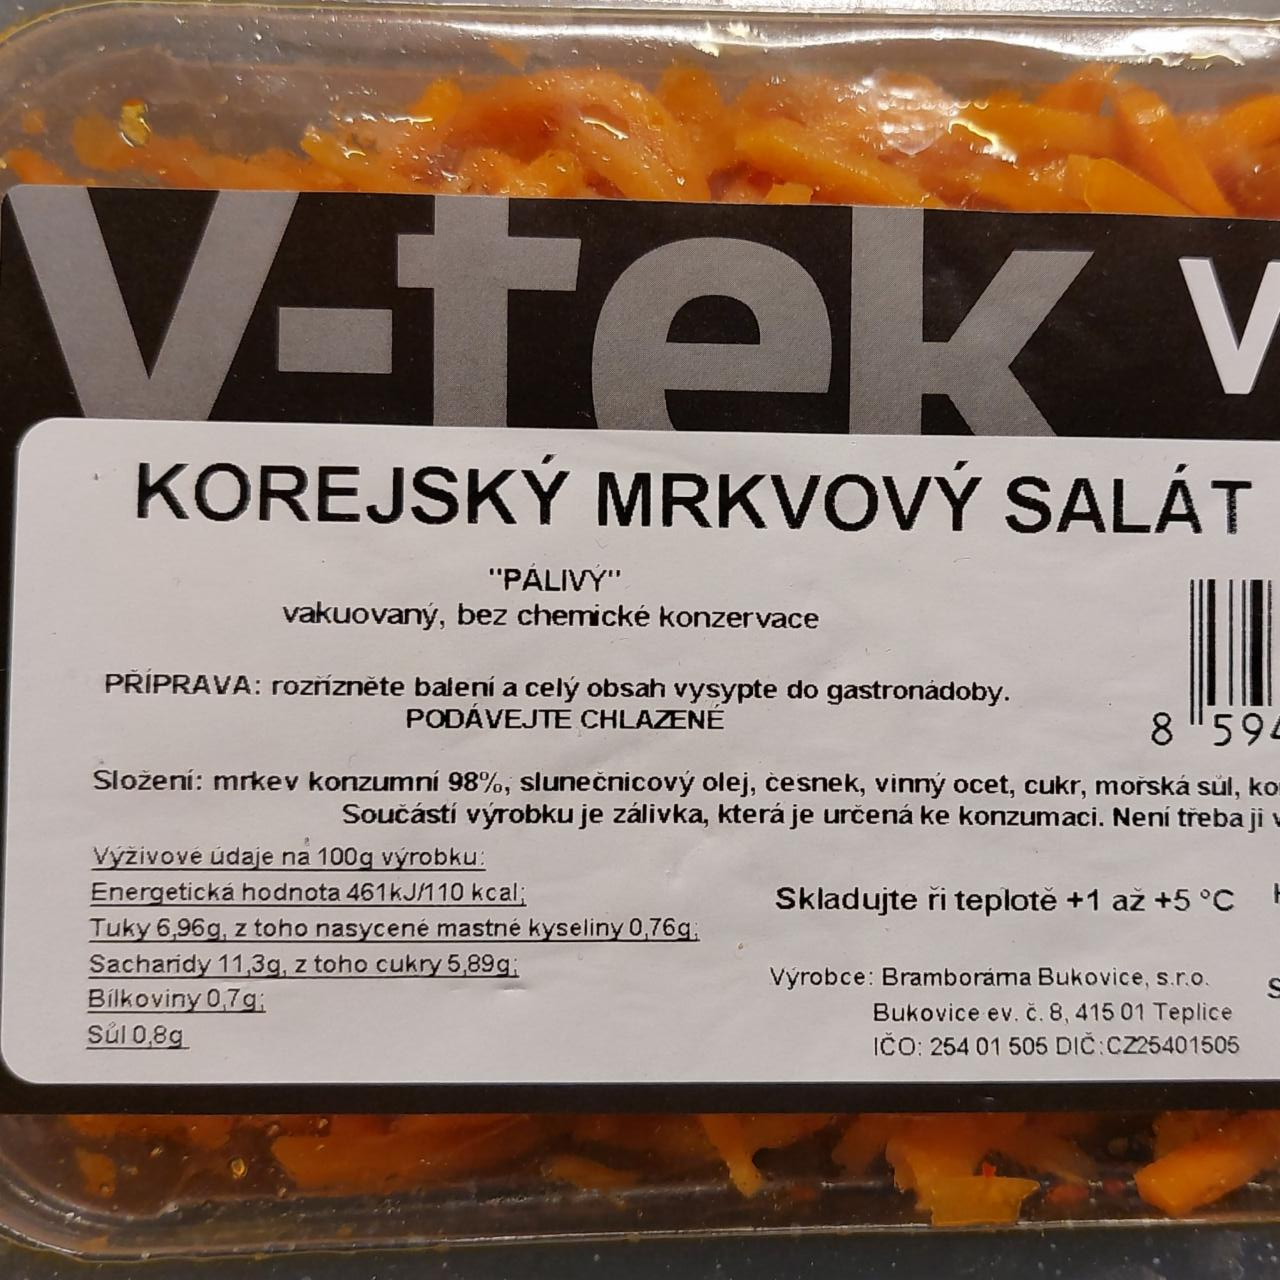 Fotografie - Korejský mrkvový salát V-tek